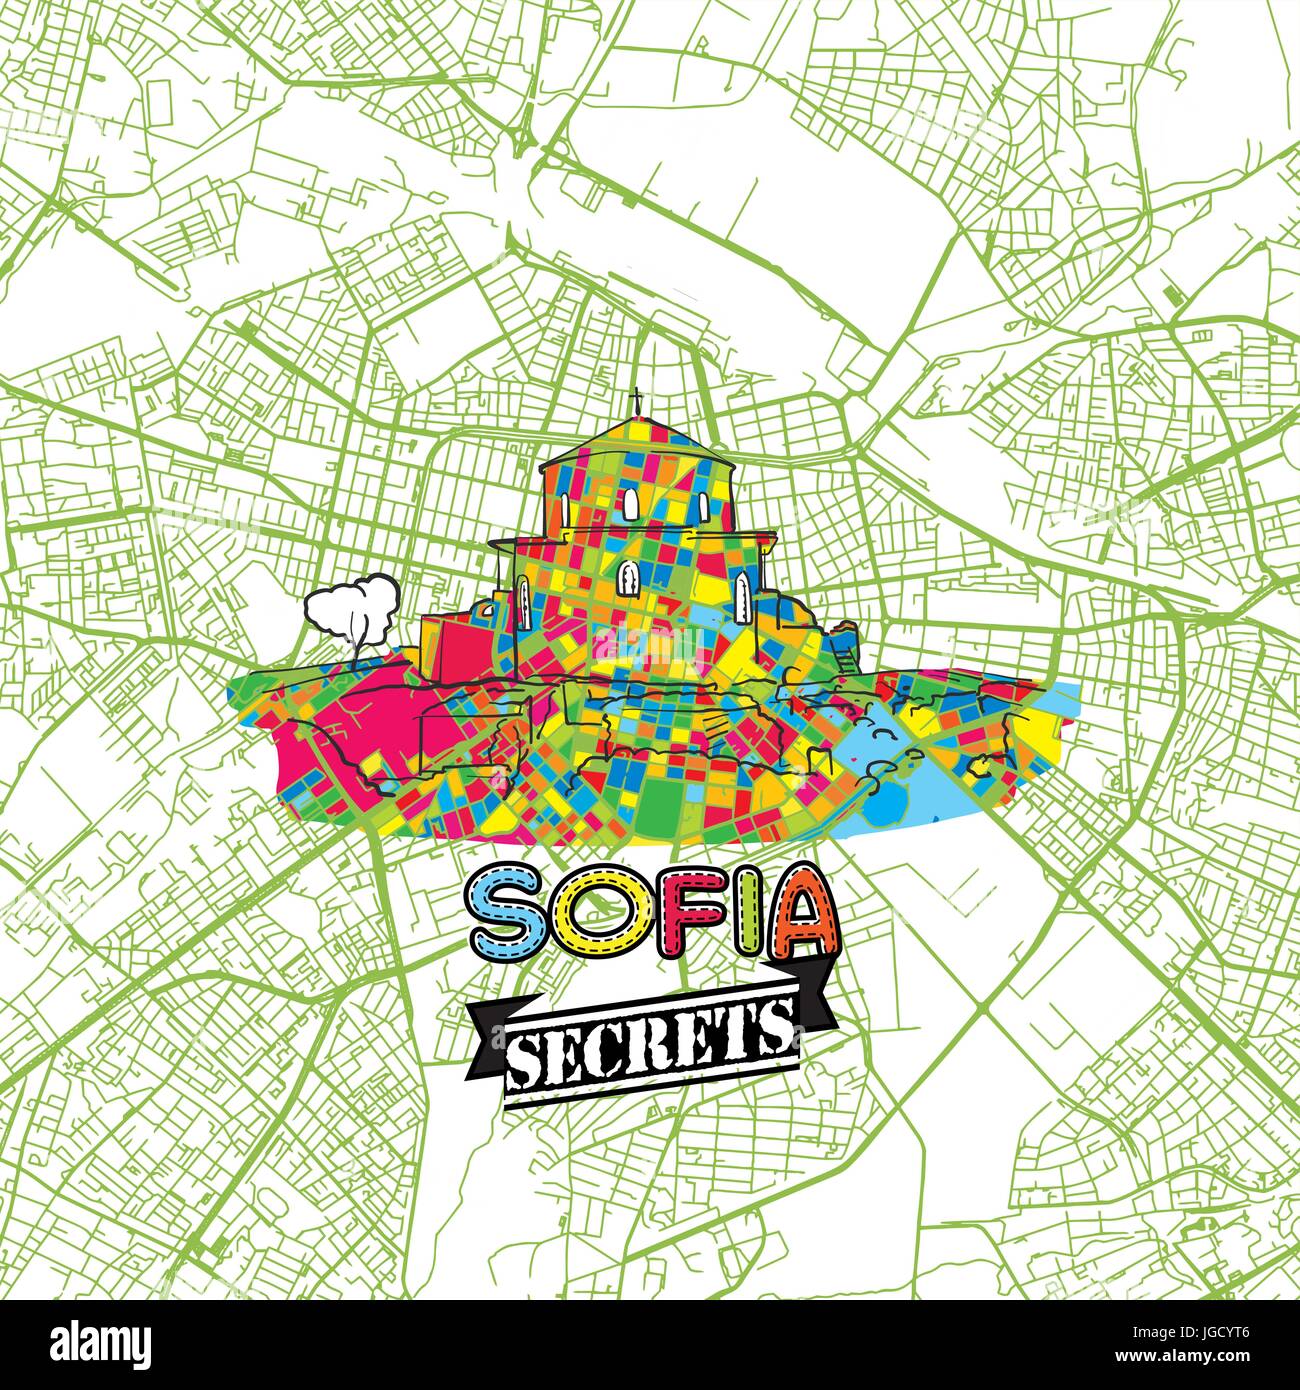 Sofia Reisen Geheimnisse Art Map für die Zuordnung von Experten und Reiseführer. Handgemachte Stadt Logo, Typo-Abzeichen und Hand gezeichnete Vektor-Bild an der Spitze sind gruppiert und Stock Vektor